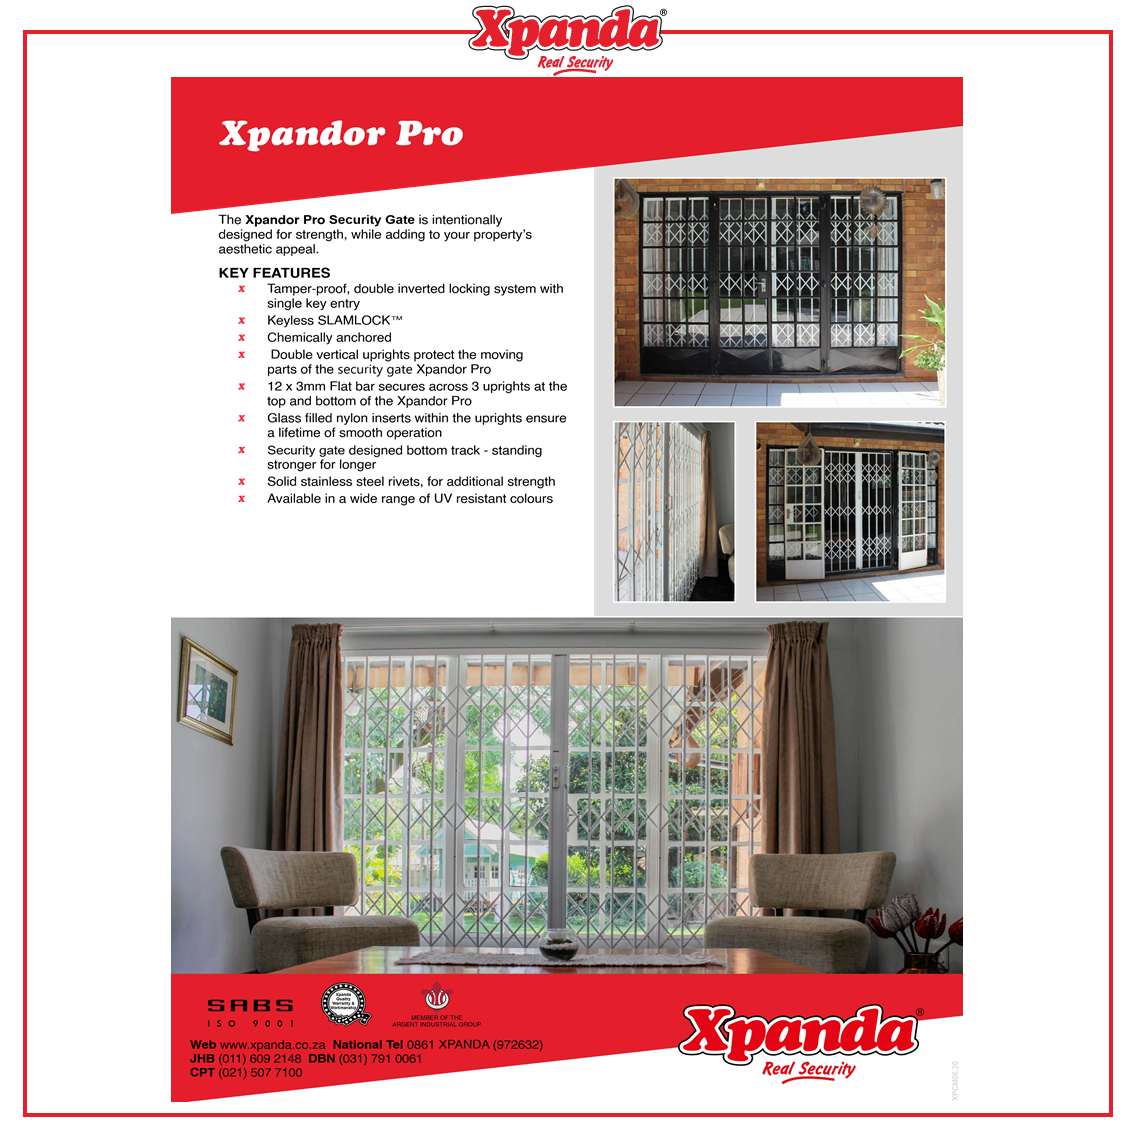 XPANDA - Xpandor Pro Catalogue